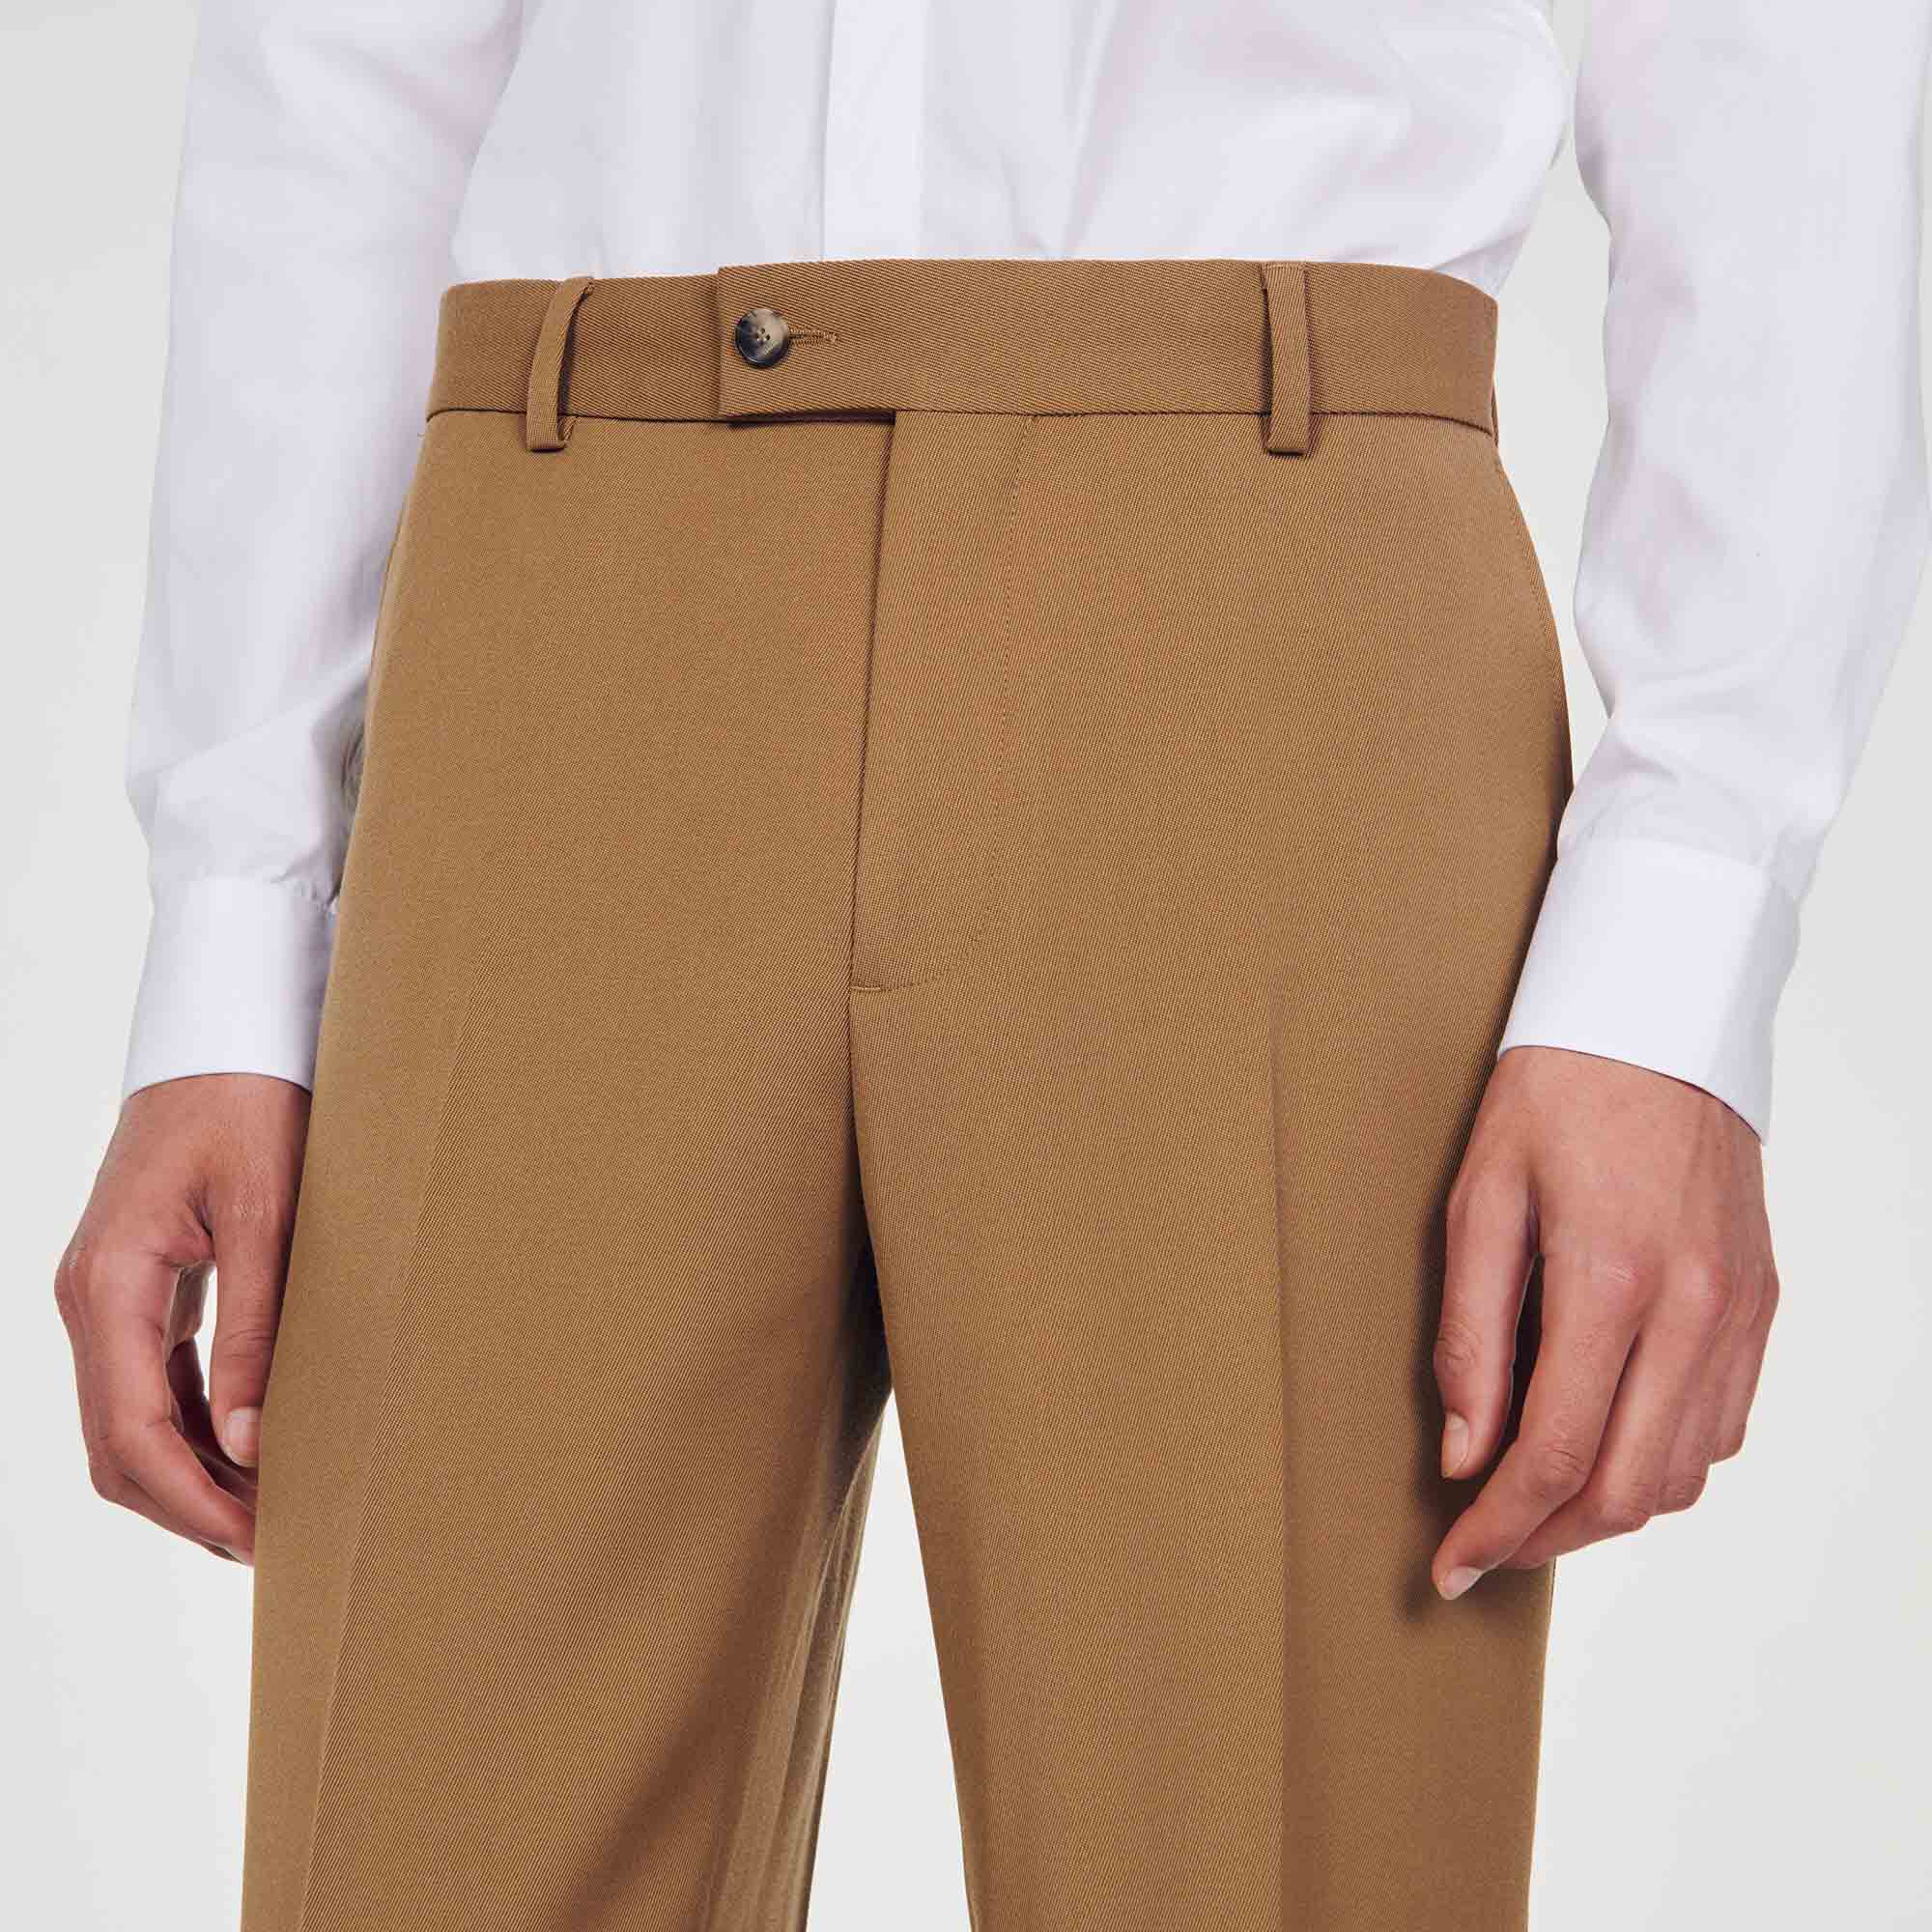 mens brown dress pants